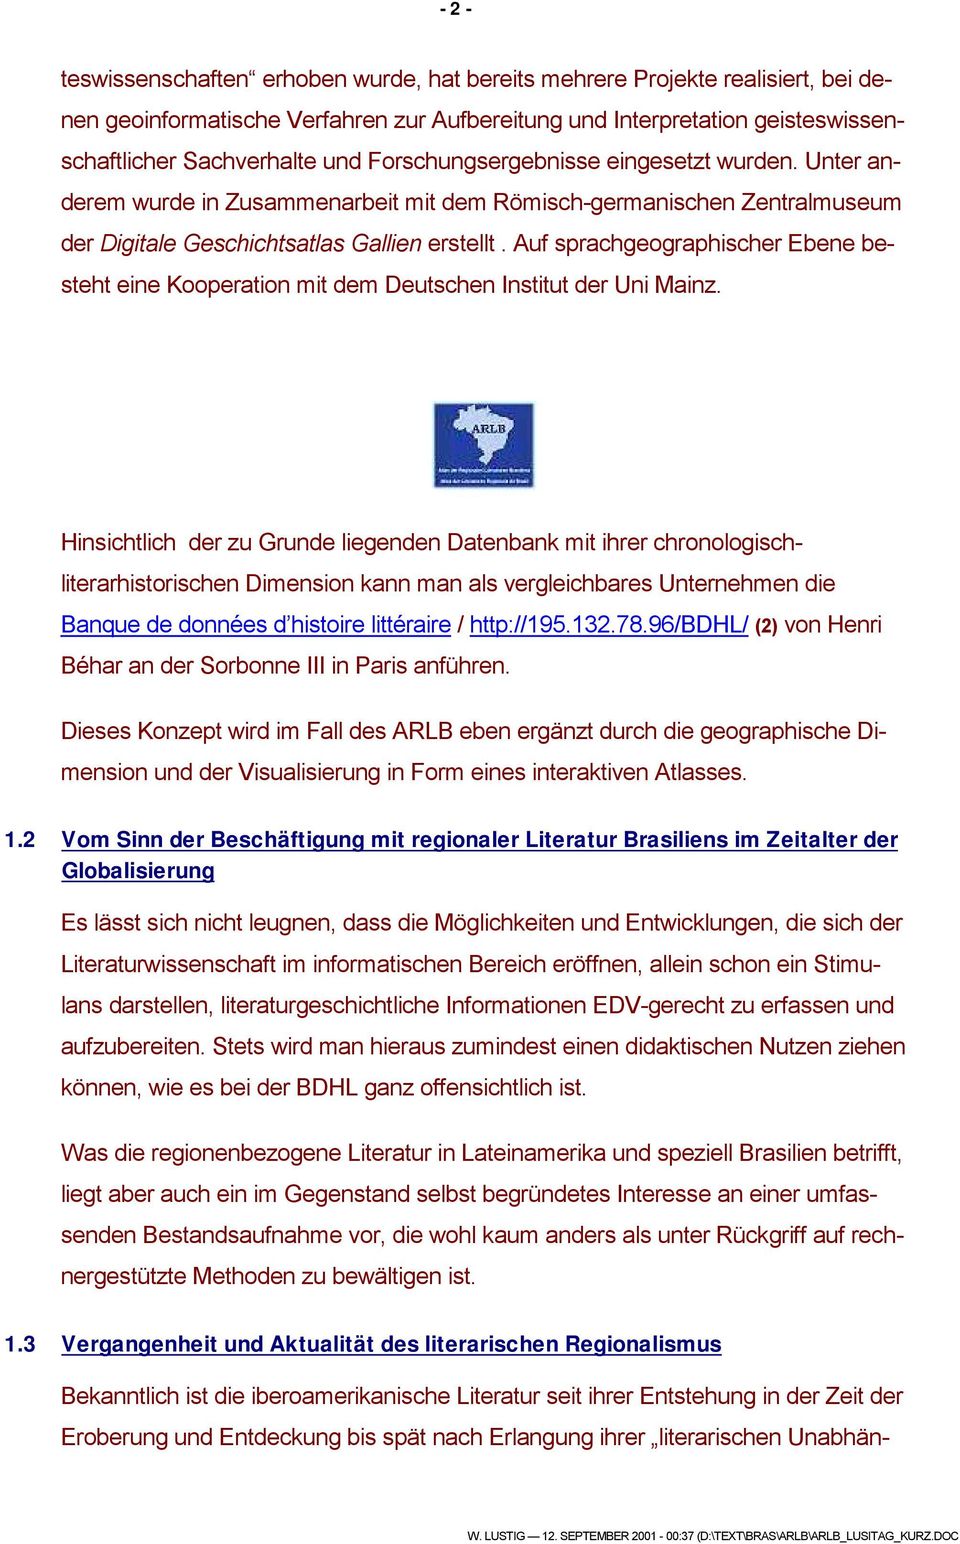 Auf sprachgeographischer Ebene besteht eine Kooperation mit dem Deutschen Institut der Uni Mainz.